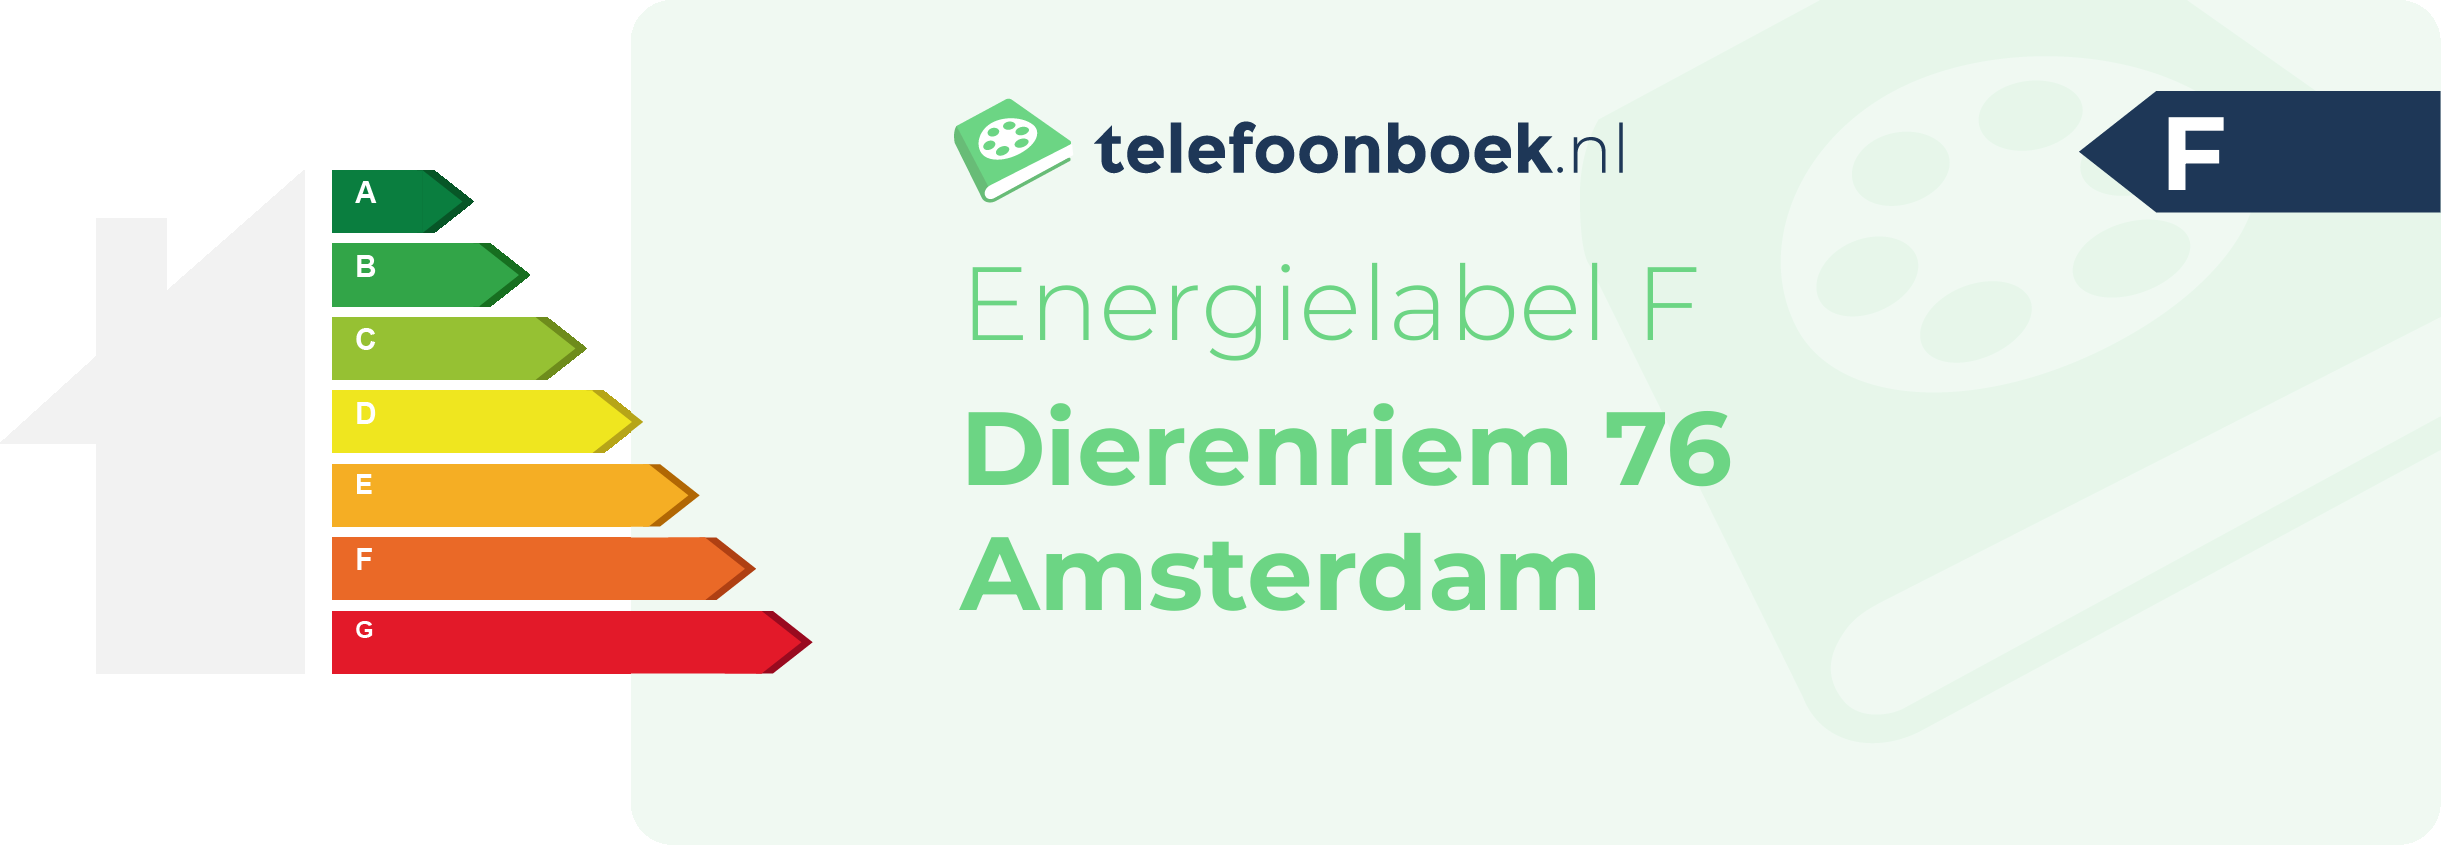 Energielabel Dierenriem 76 Amsterdam